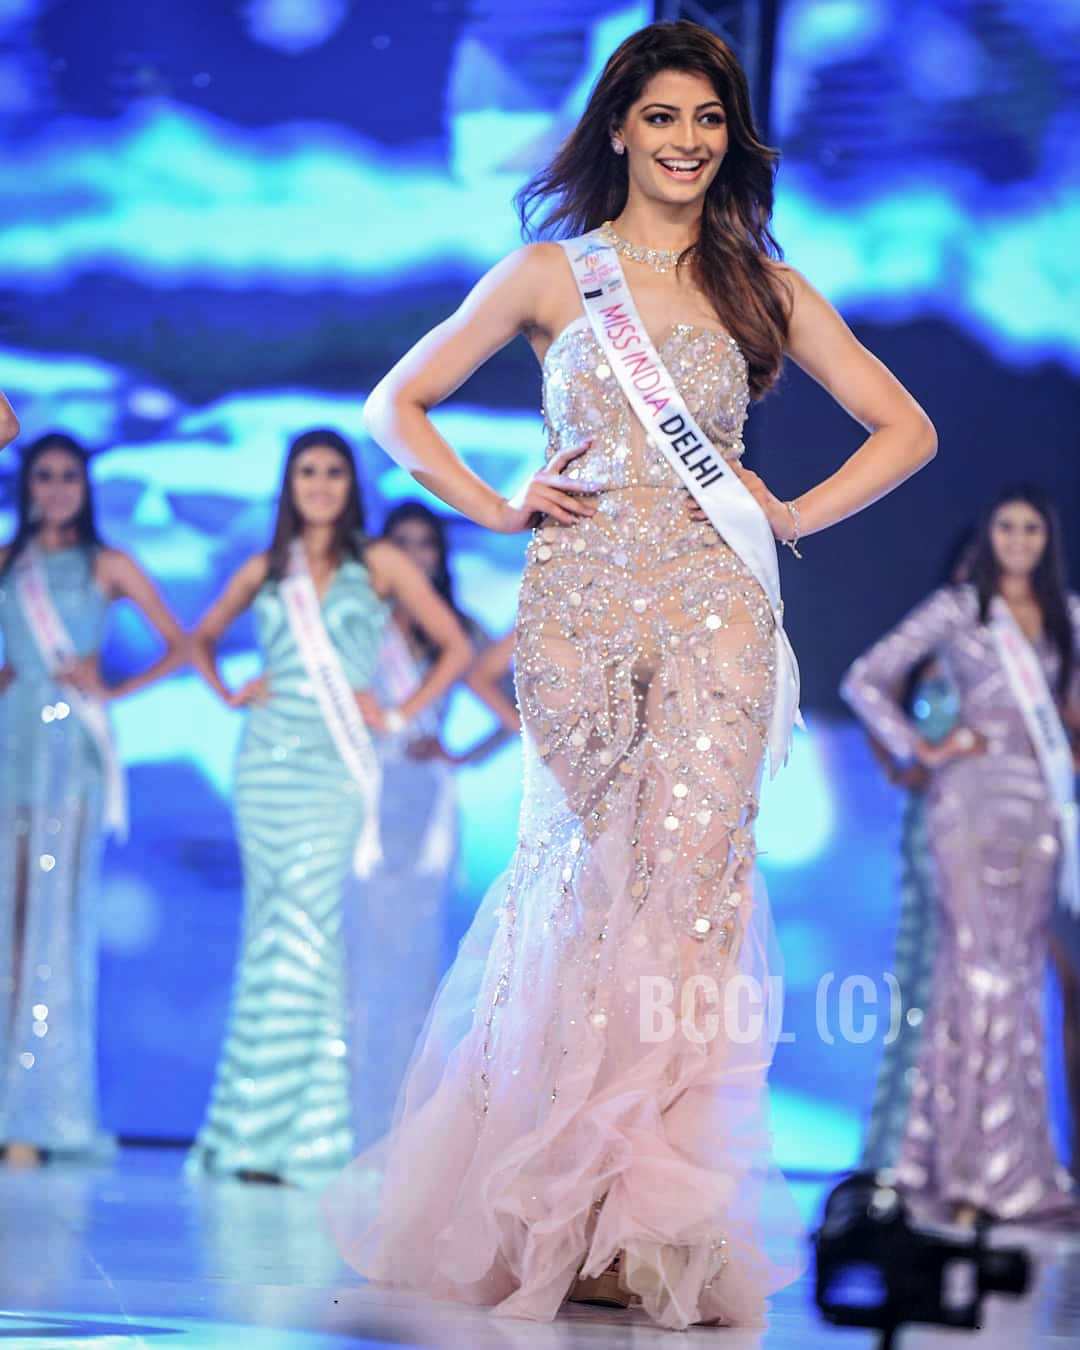 मिस इंडिया दिल्ली 2019 का खिताब जीतने के बाद रैंप वॉक करतीं मानसी सहगल